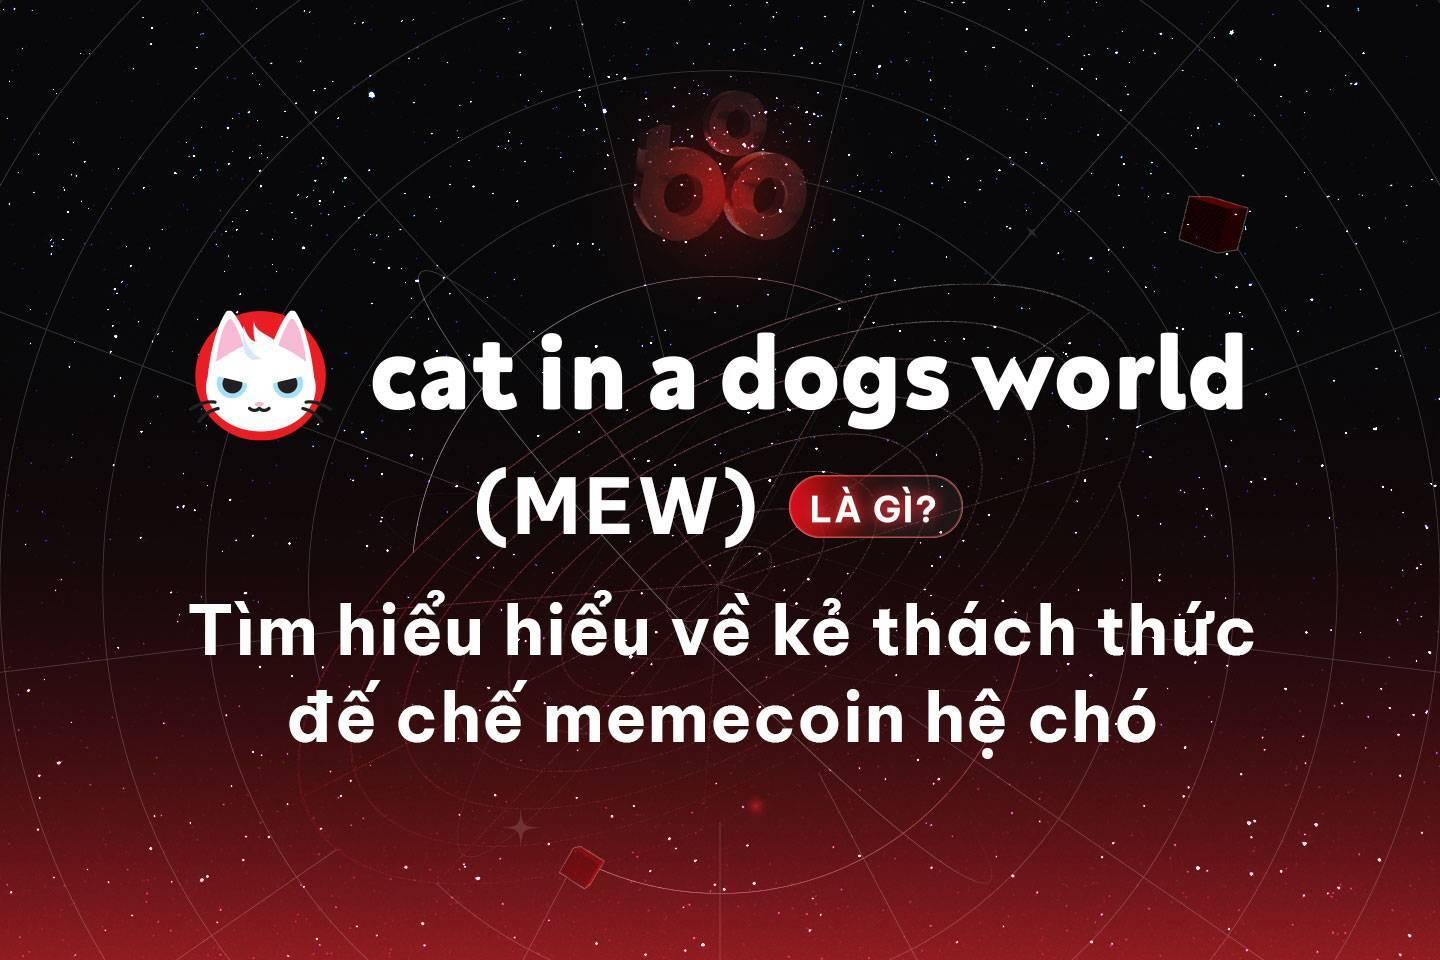 cat-in-a-dogs-world-mew-la-gi-tim-hieu-hieu-ve-ke-thach-thuc-de-che-memecoin-he-cho